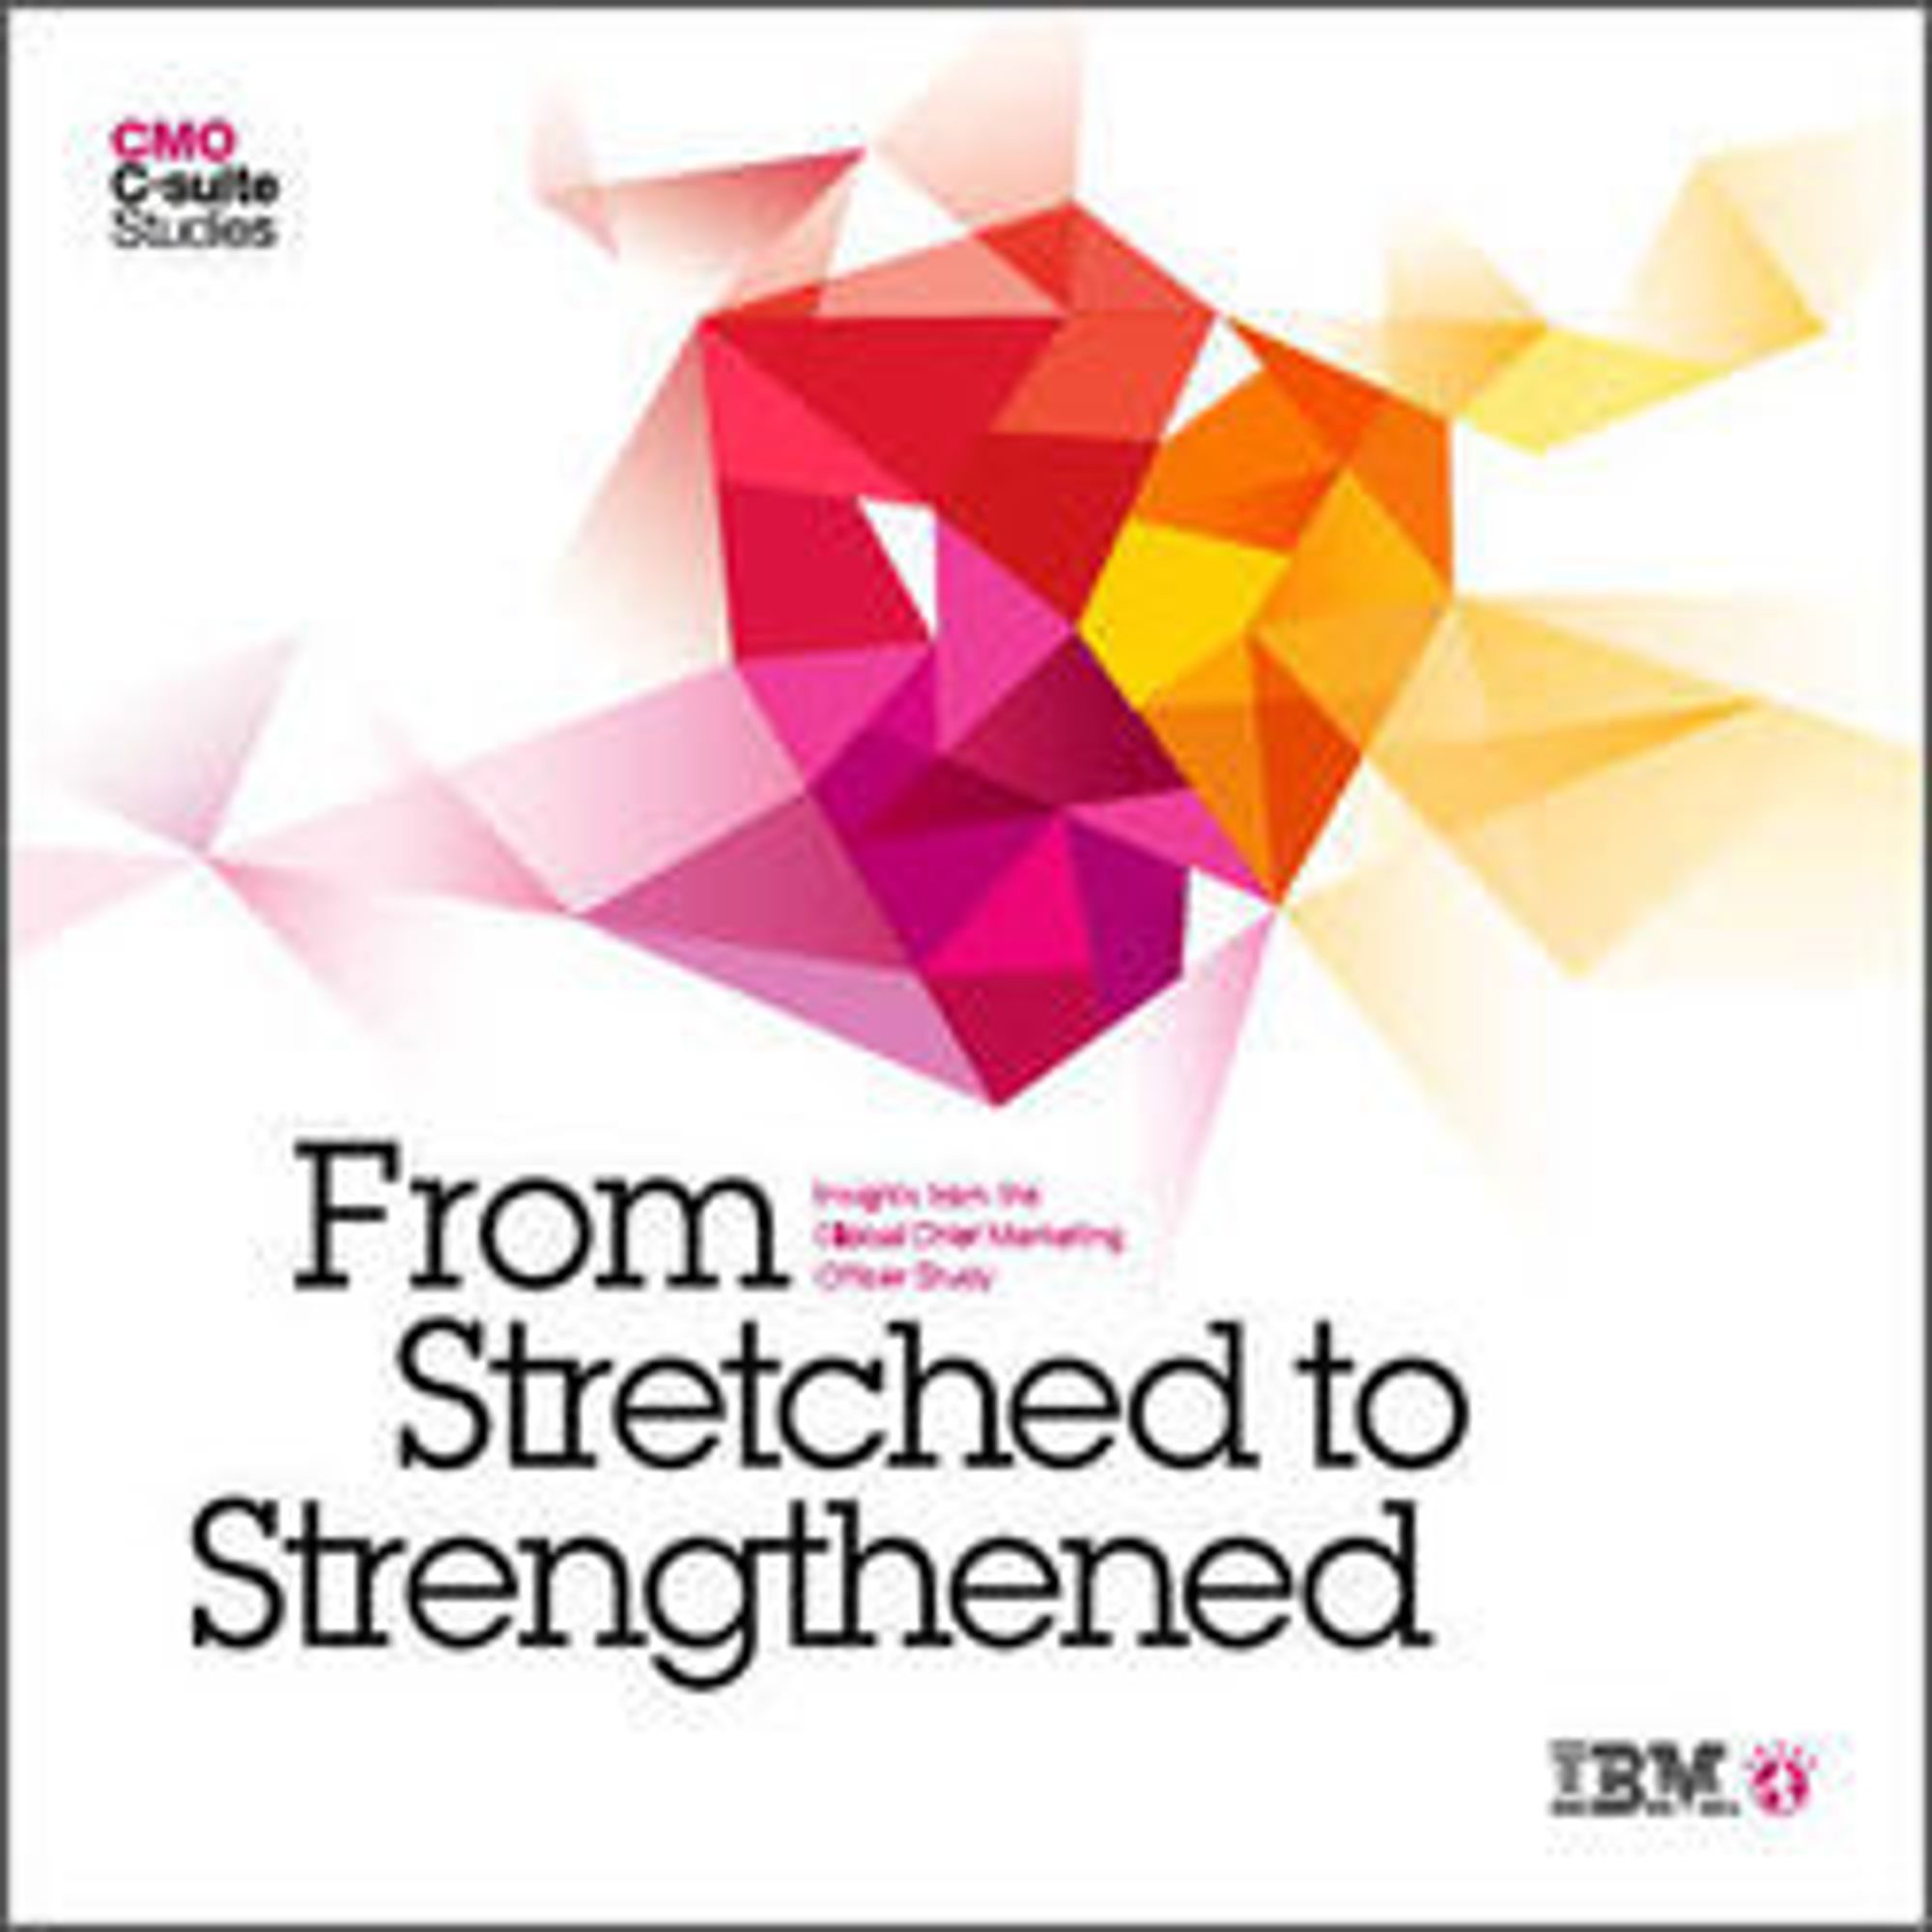 Global CMO Study kan lastes ned fra IBMs nettsted.